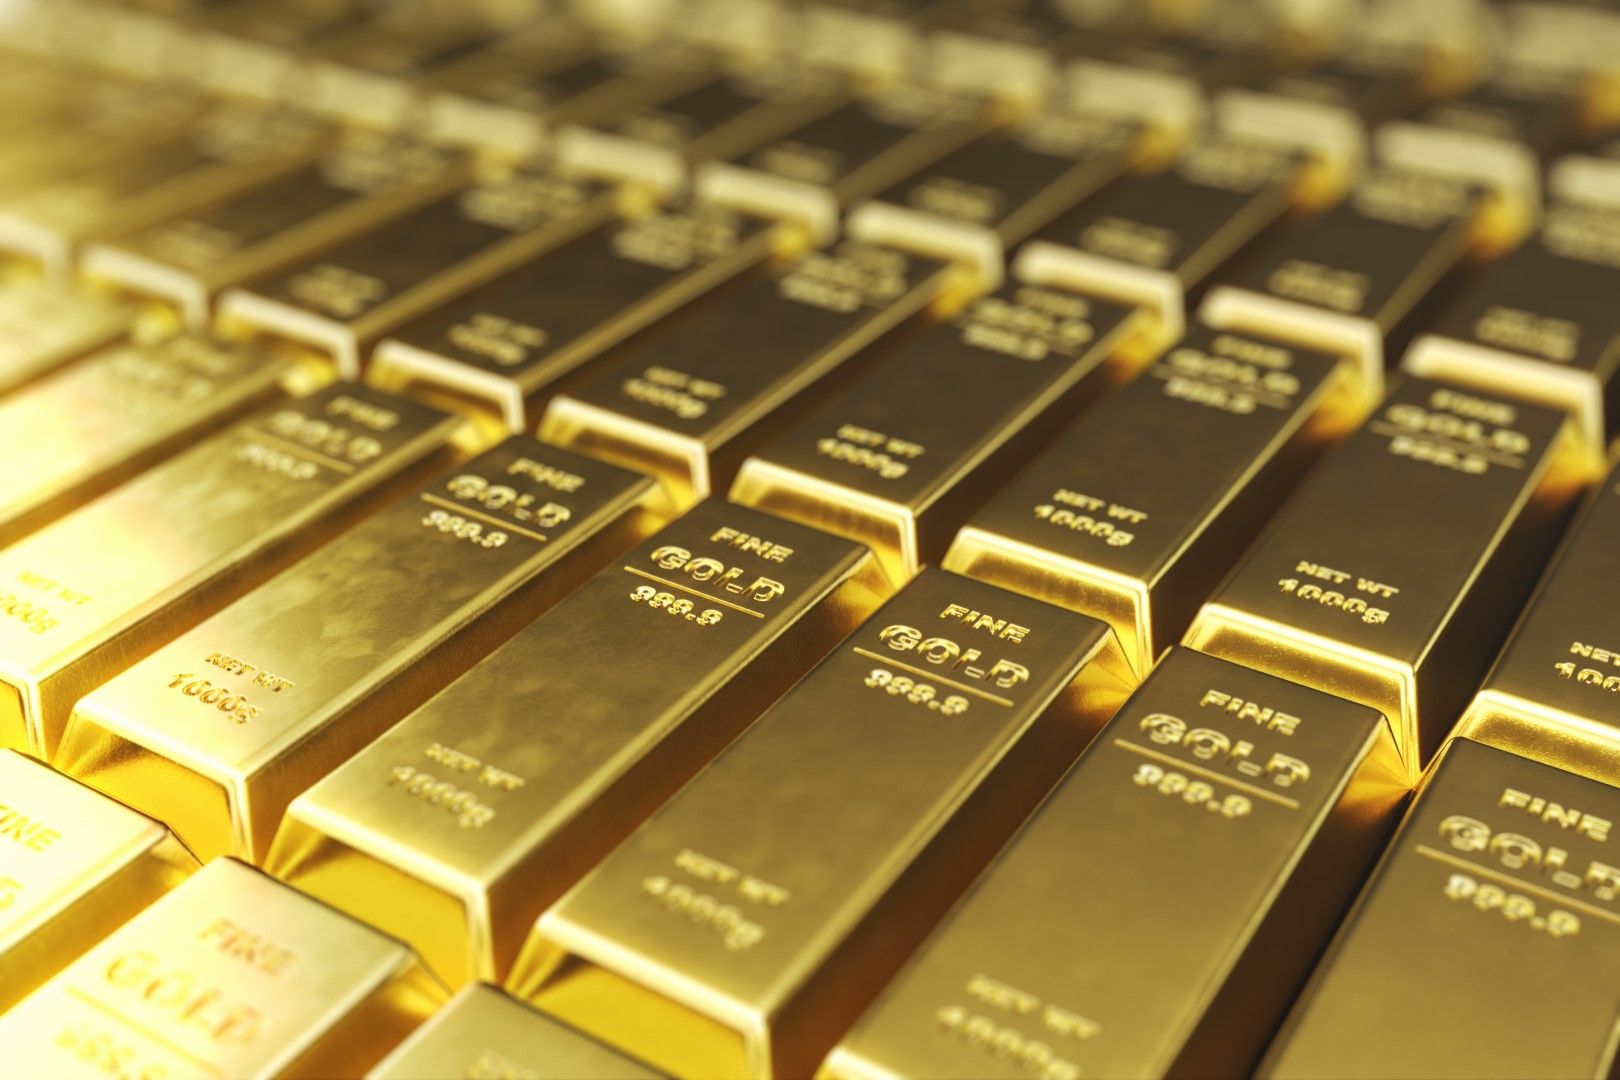 Инвеститорите възприемат златото като убежище. Ценният метал поскъпва в периоди на политическа и икономическа несигурност